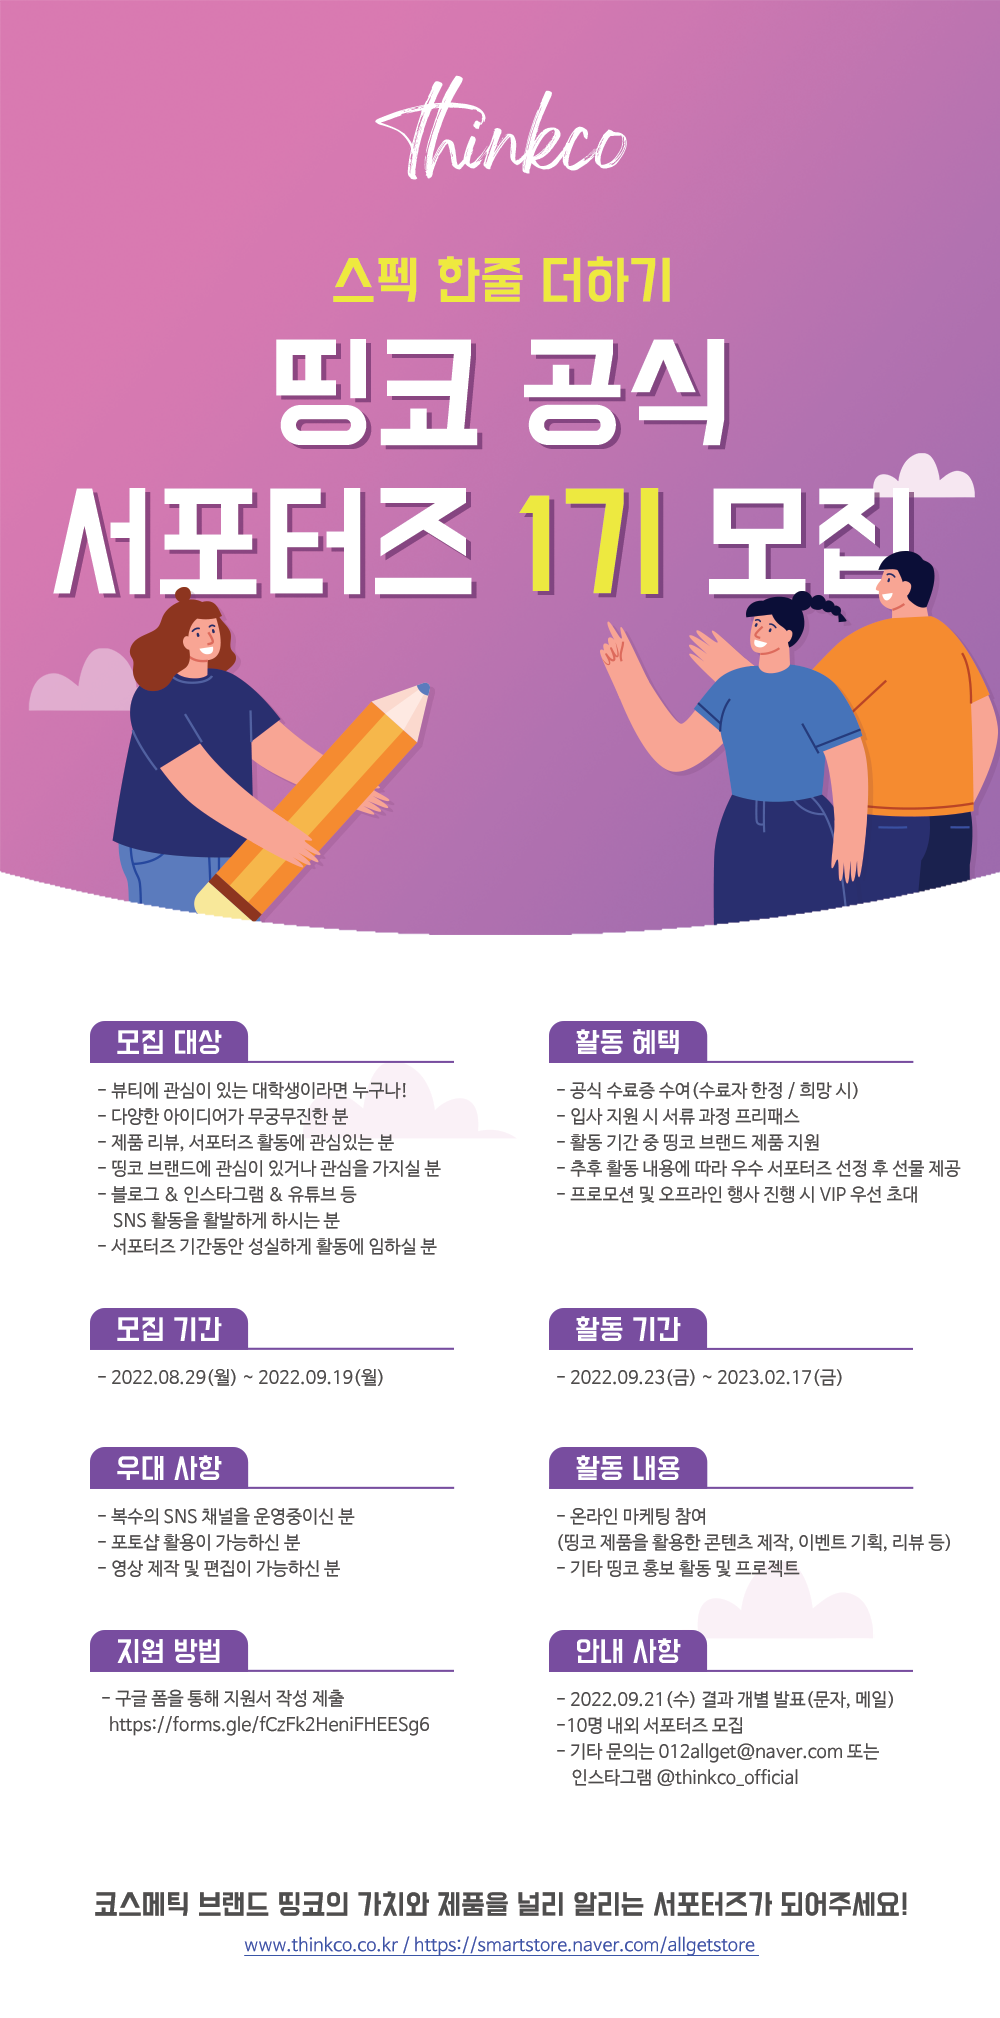 띵코 공식 서포터즈 1기 모집